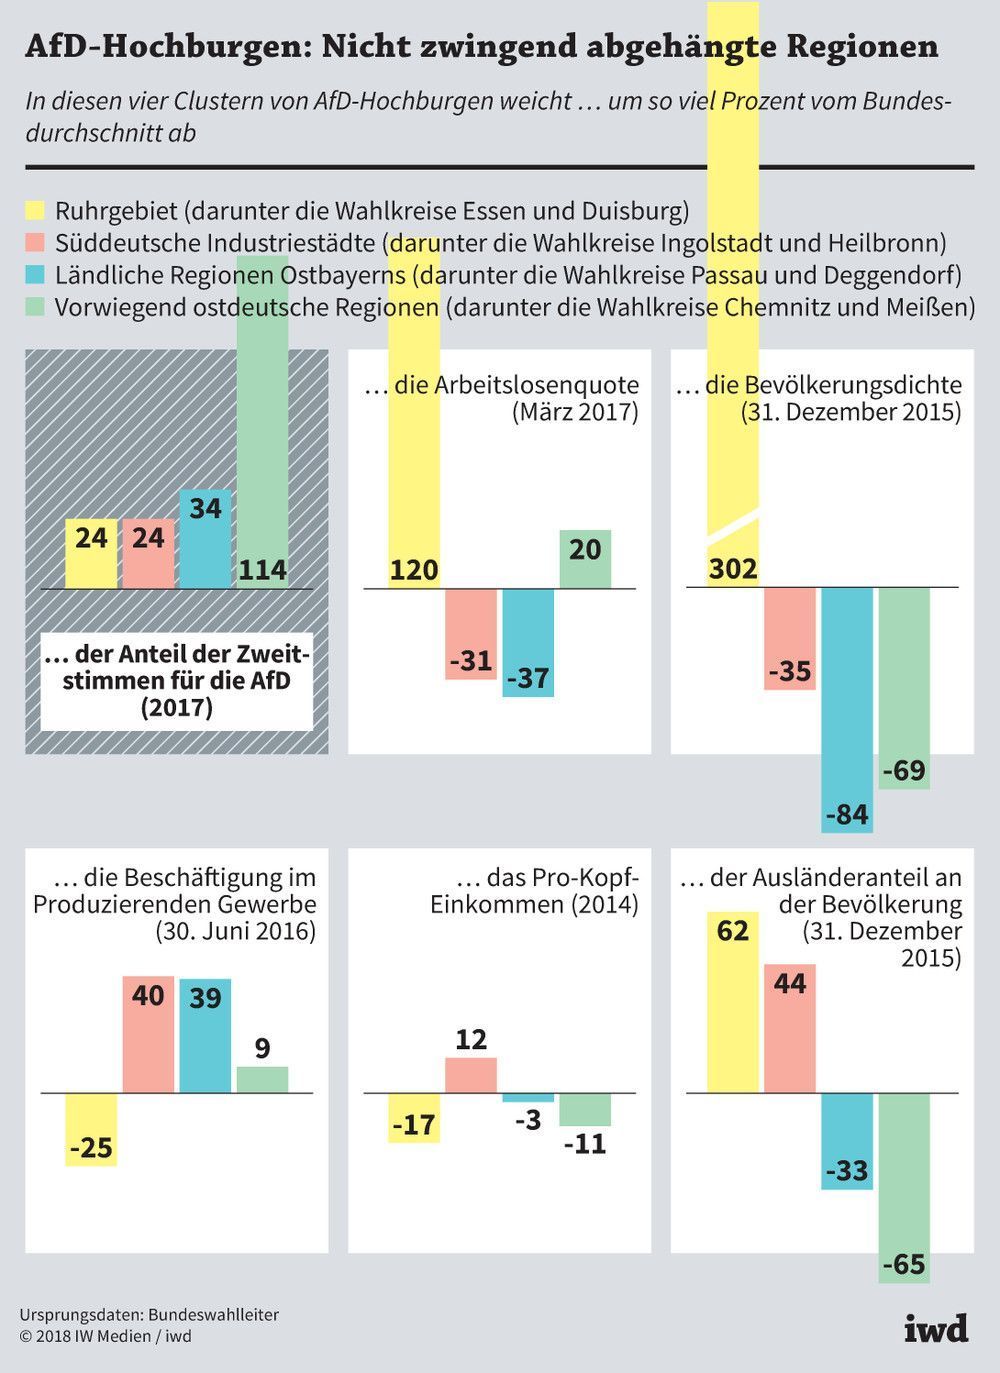 Bevölkerungsdichte, Arbeitslosenquote, Pro-Kopf-Einkommen, Industriebeschäftigte und Ausländeranteil in den AfD-Hochburgen der Bundestagswahl 2017